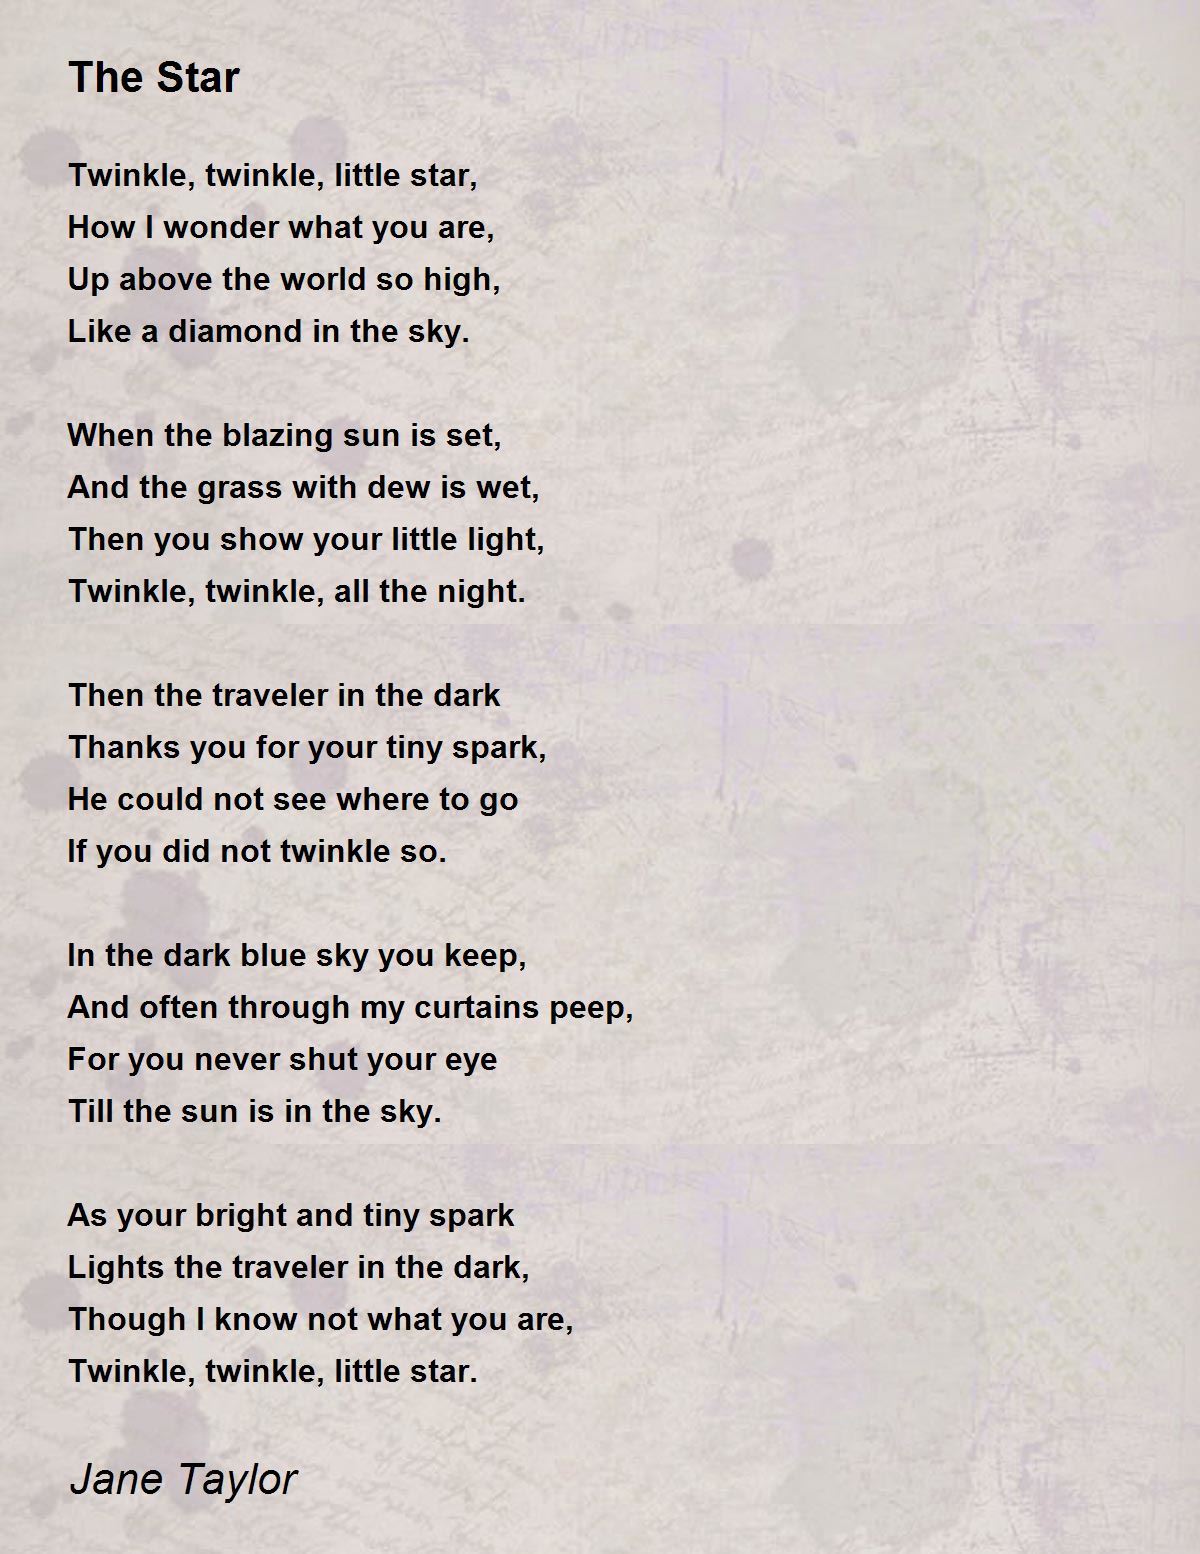 The Star Poem by Jane Taylor - Poem Hunter